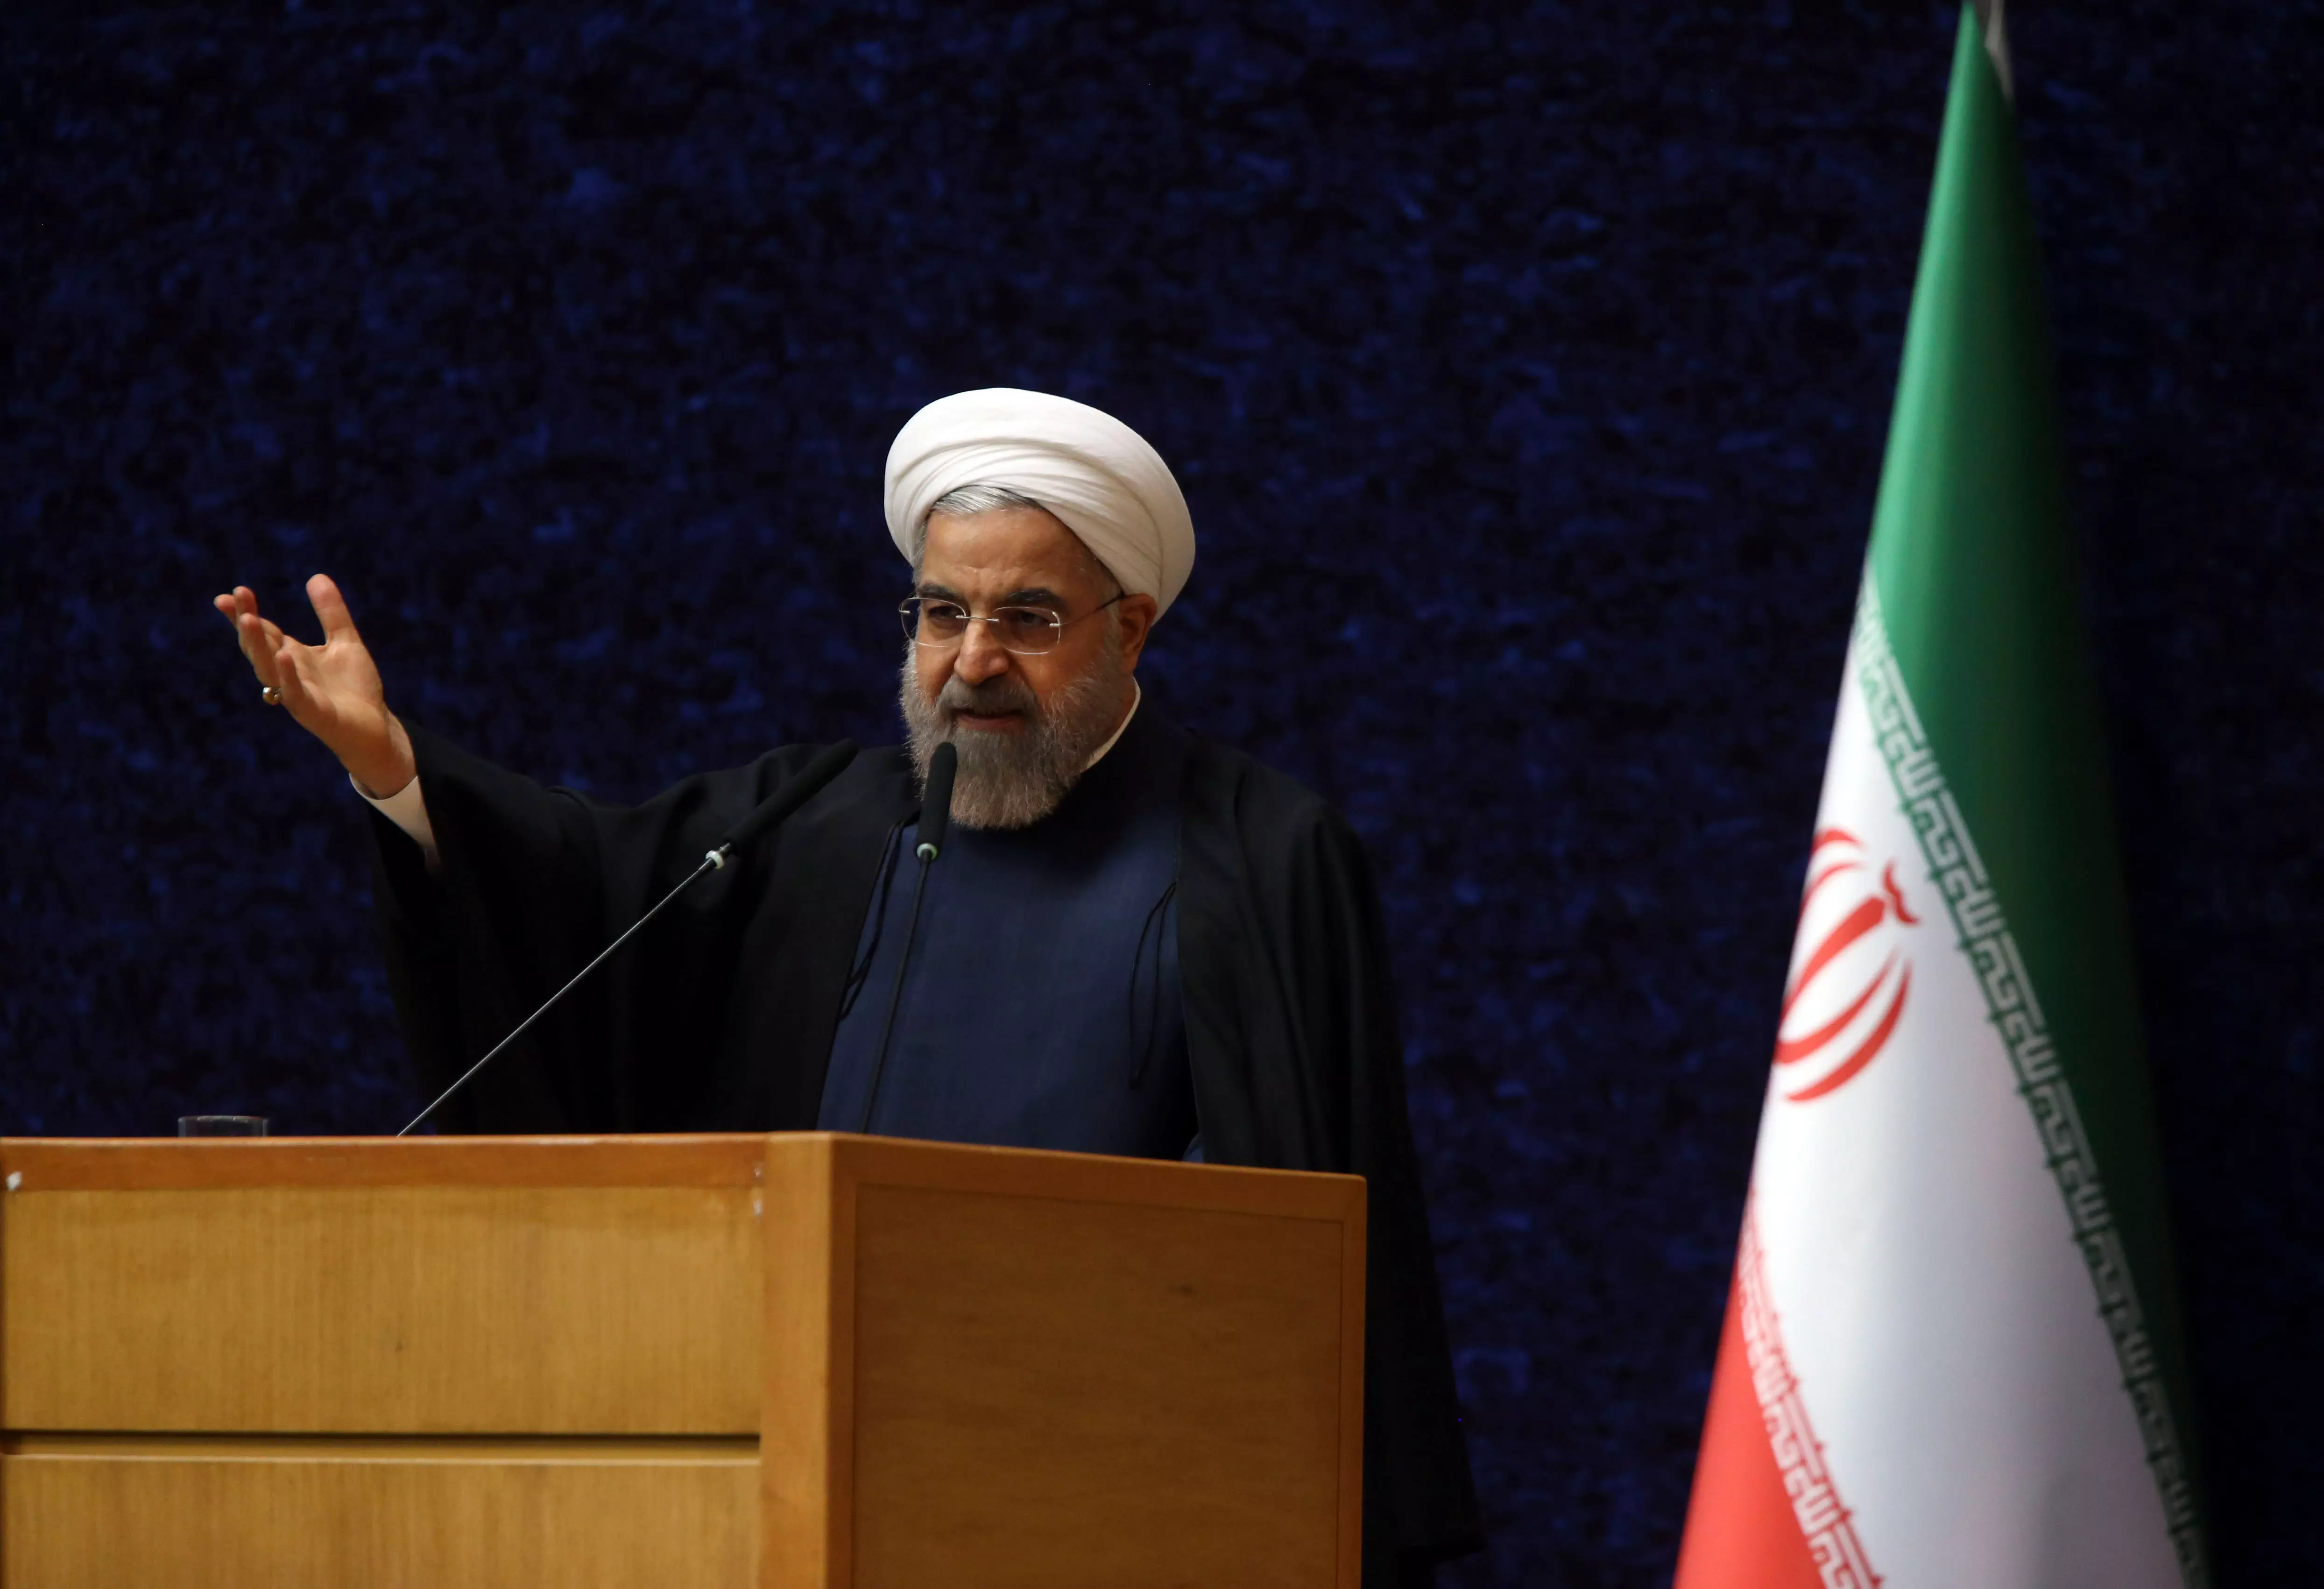 "האומה האיראנית הייתה ותהיה המנצחת במו"מ". רוחאני נואם בטקס "יום הטכנולוגיה הגרעינית", היום